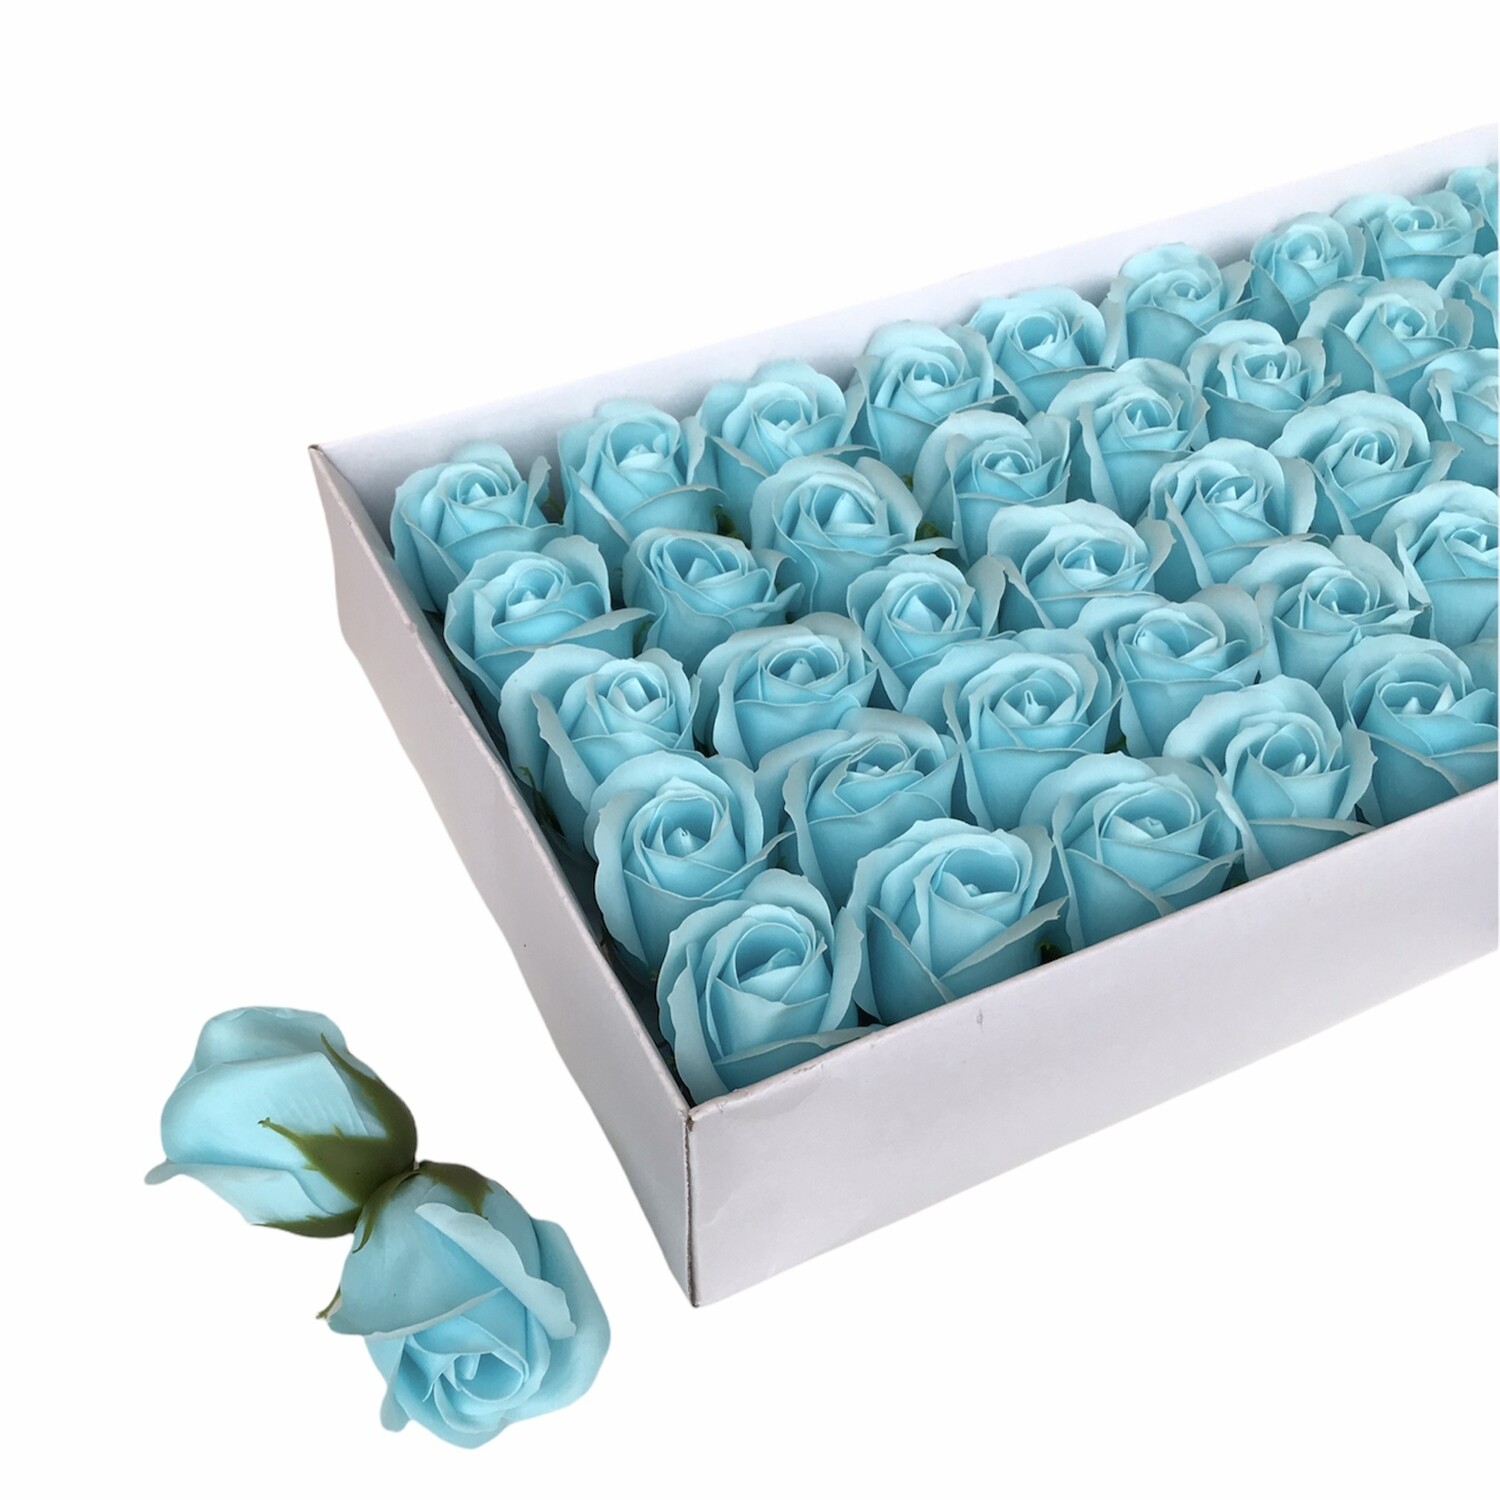 Мыльные розы, цвет - БИРЮЗОВЫЙ, размер 5х5 см, в упаковке 50 шт